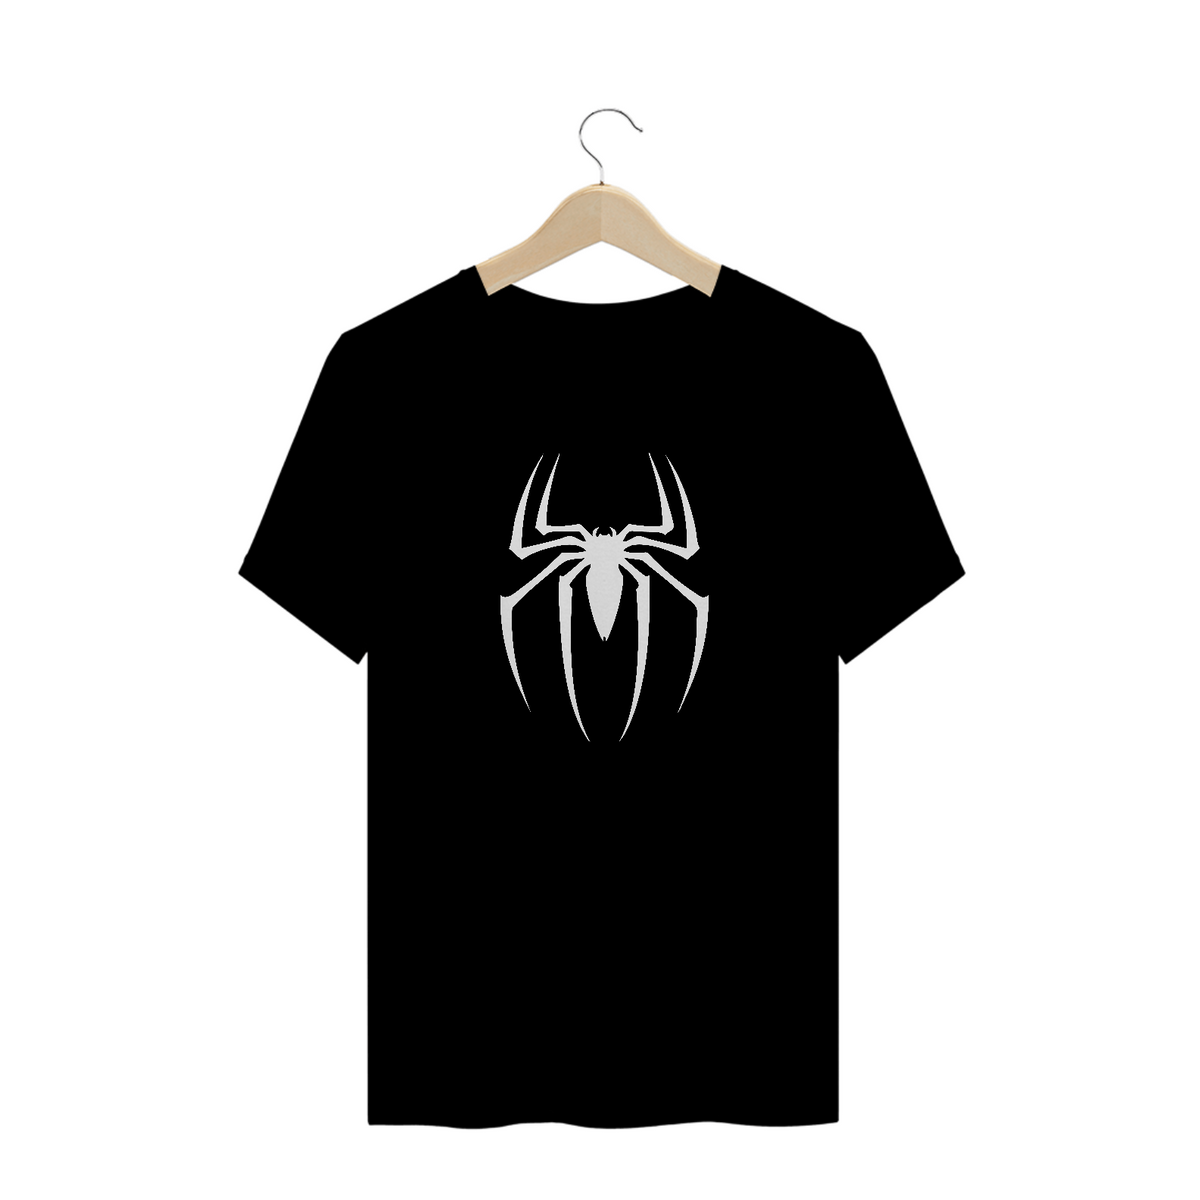 Nome do produto: Camisa Spider Man IV